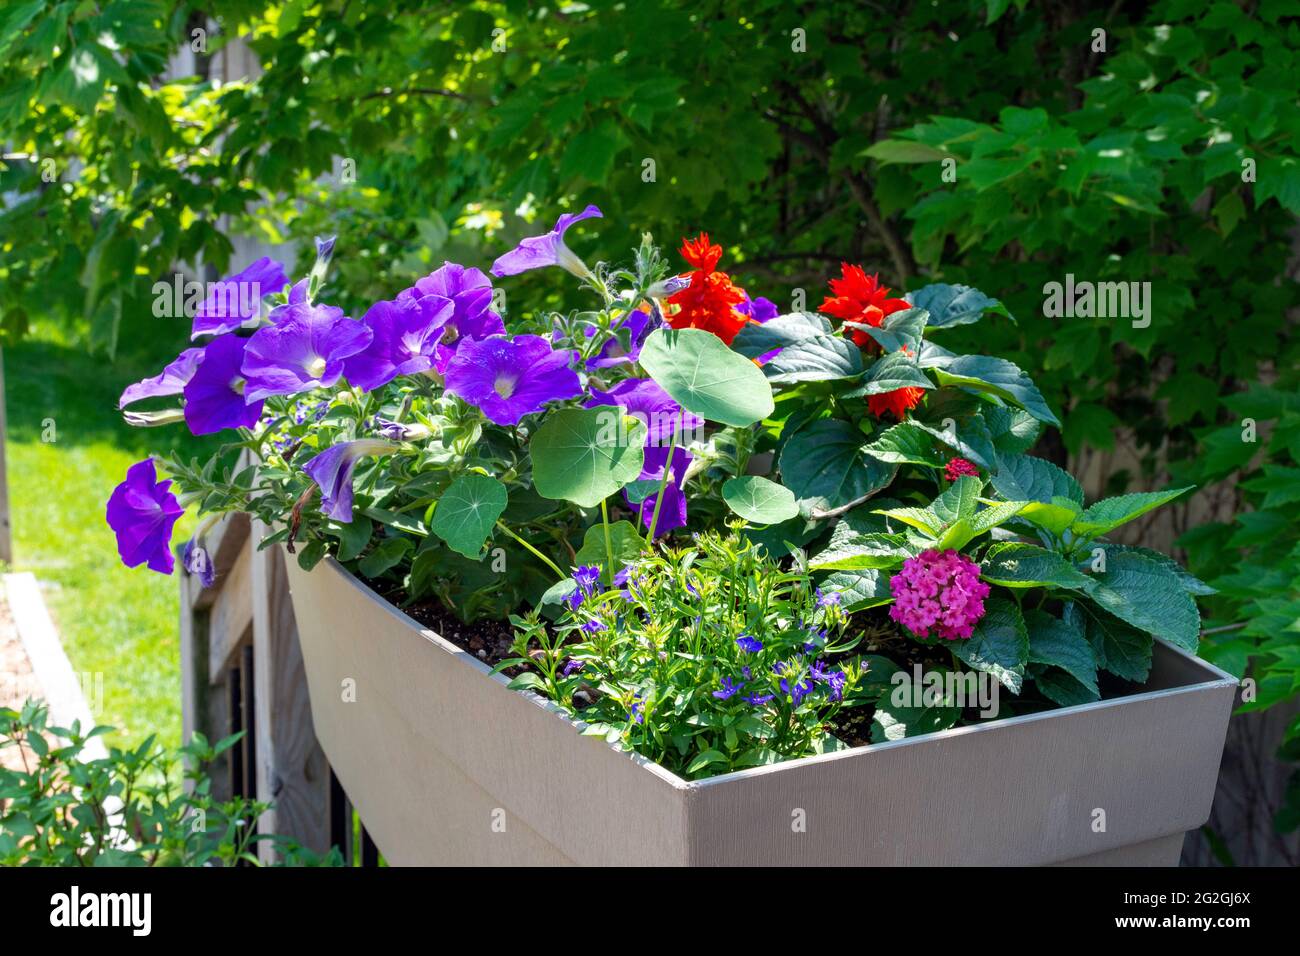 Ce jardin contient des balustrades colorées remplies de salive, de nasturtium, de lantana et de fleurs de pétunia pour attirer les colibris. Banque D'Images